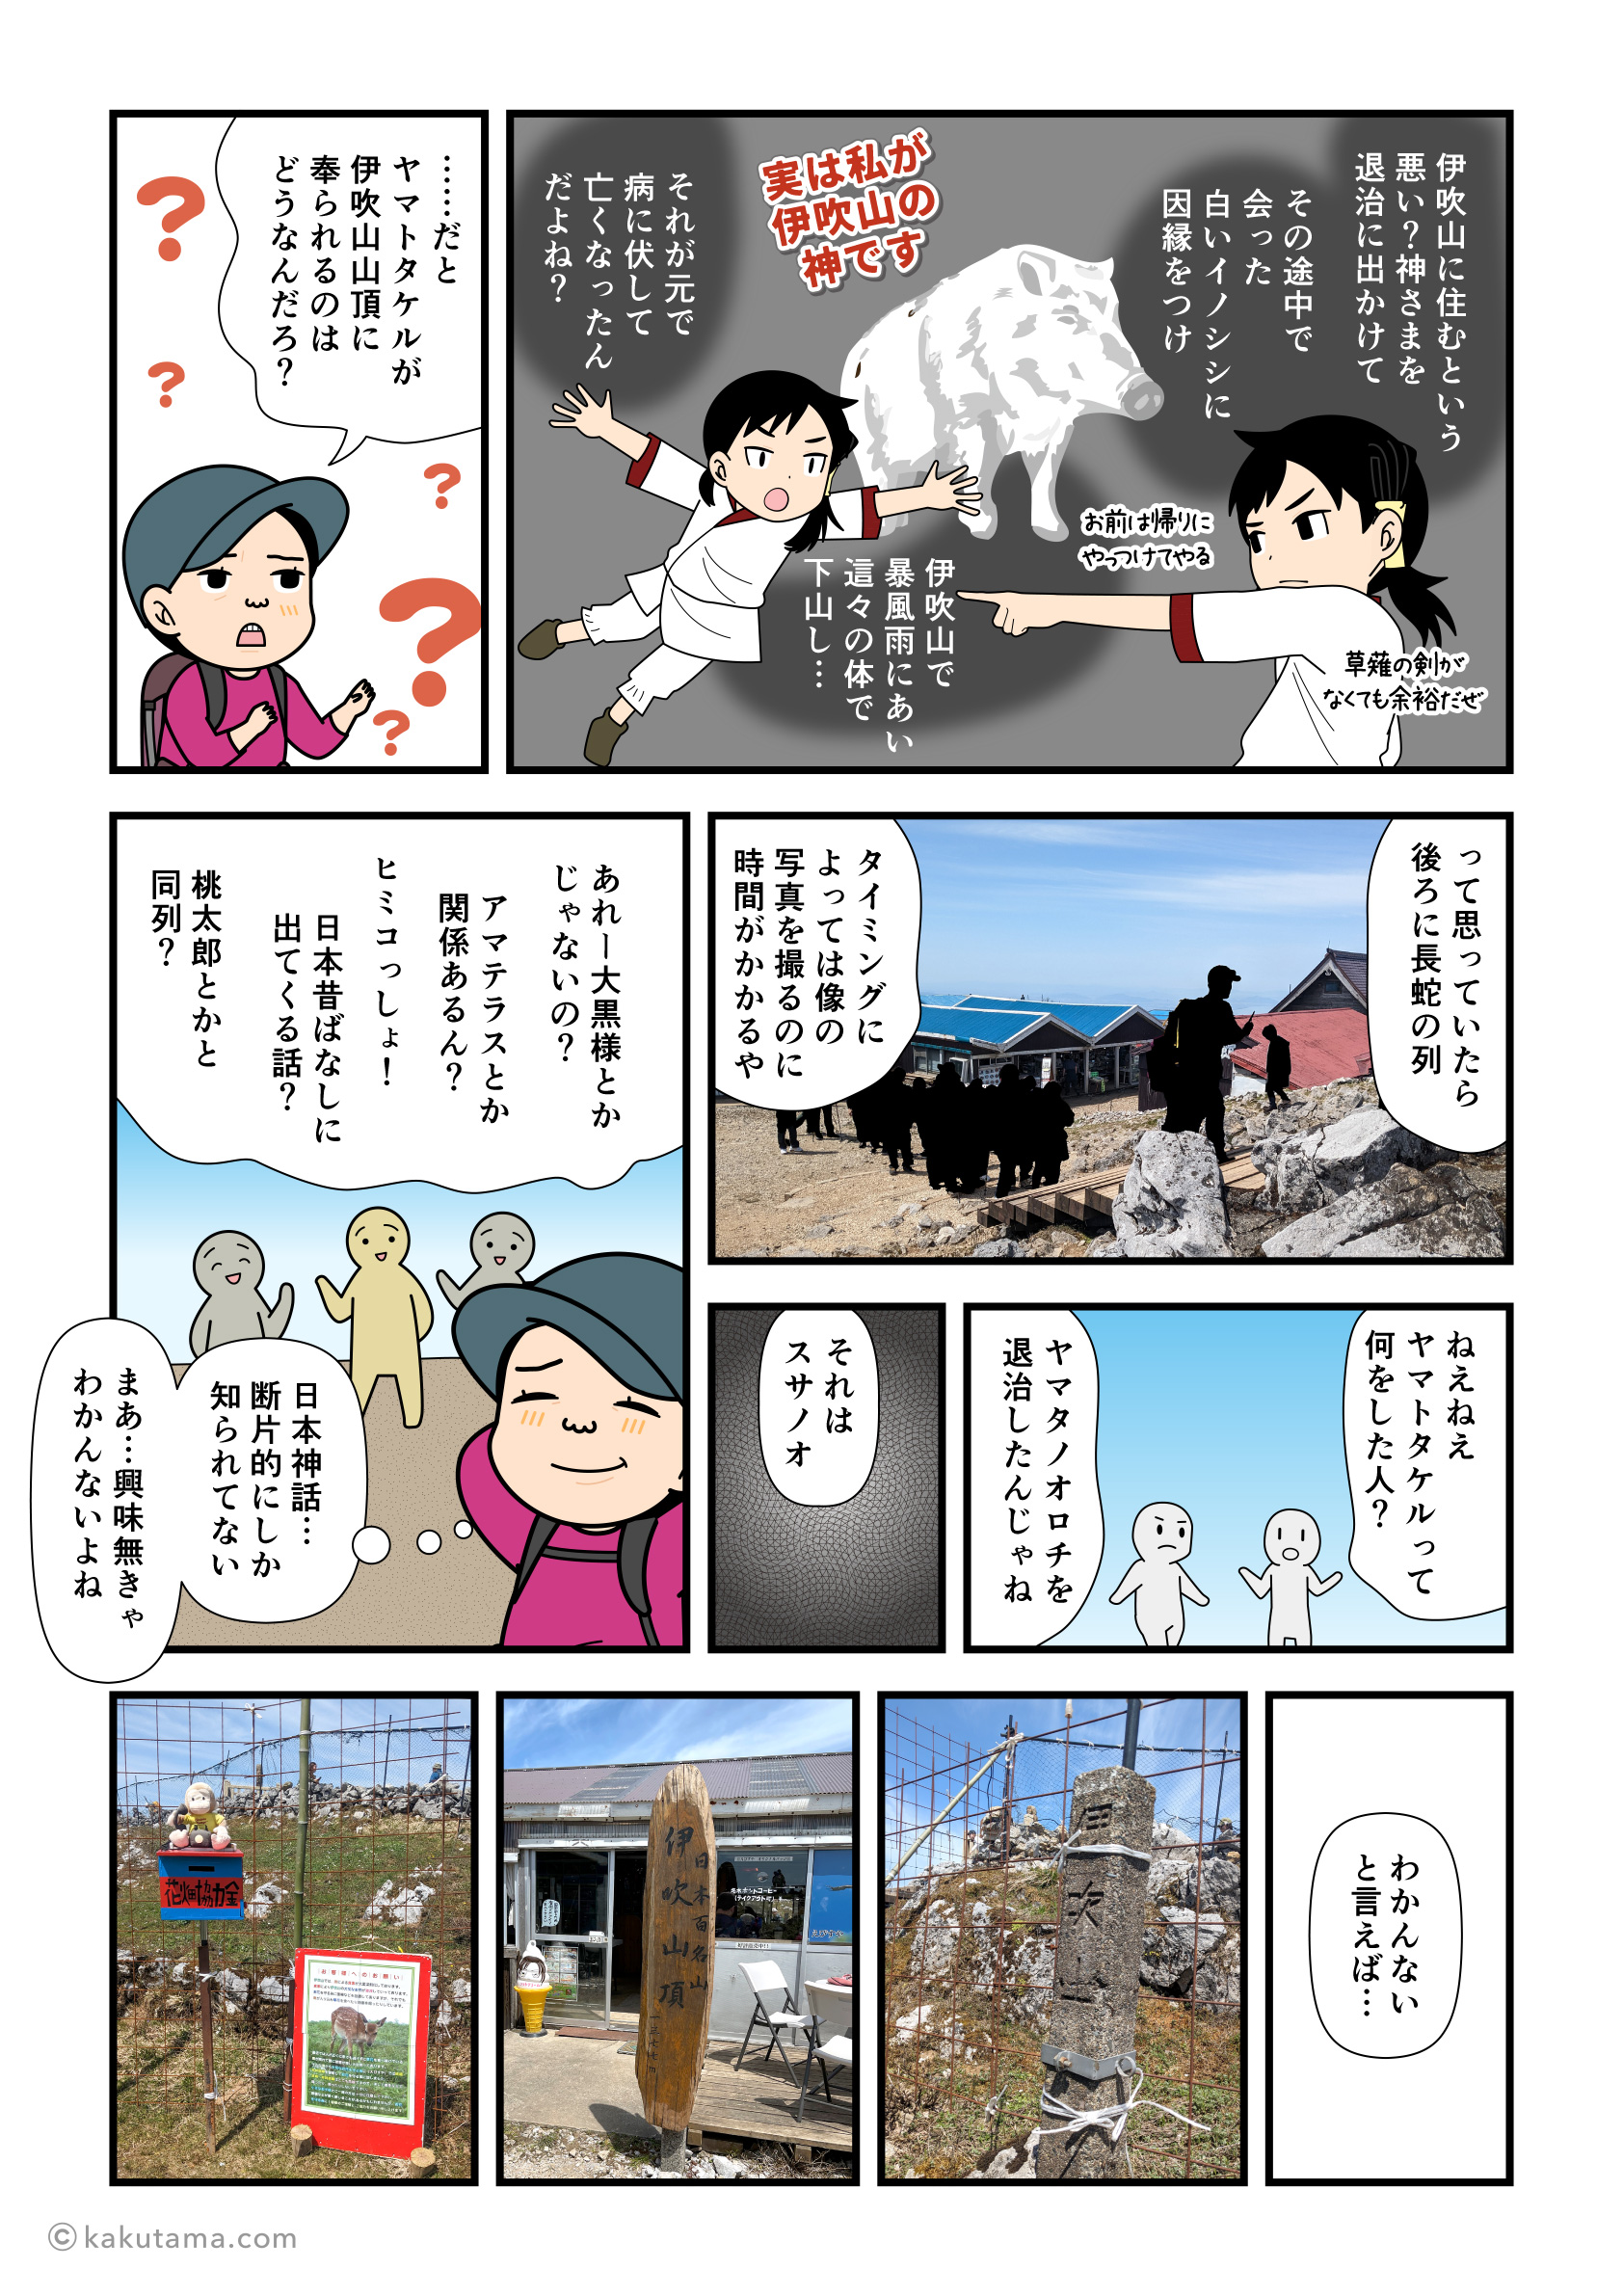 伊吹山山頂でヤマトタケル像を見て日本神話と山のことを考える登山者の漫画